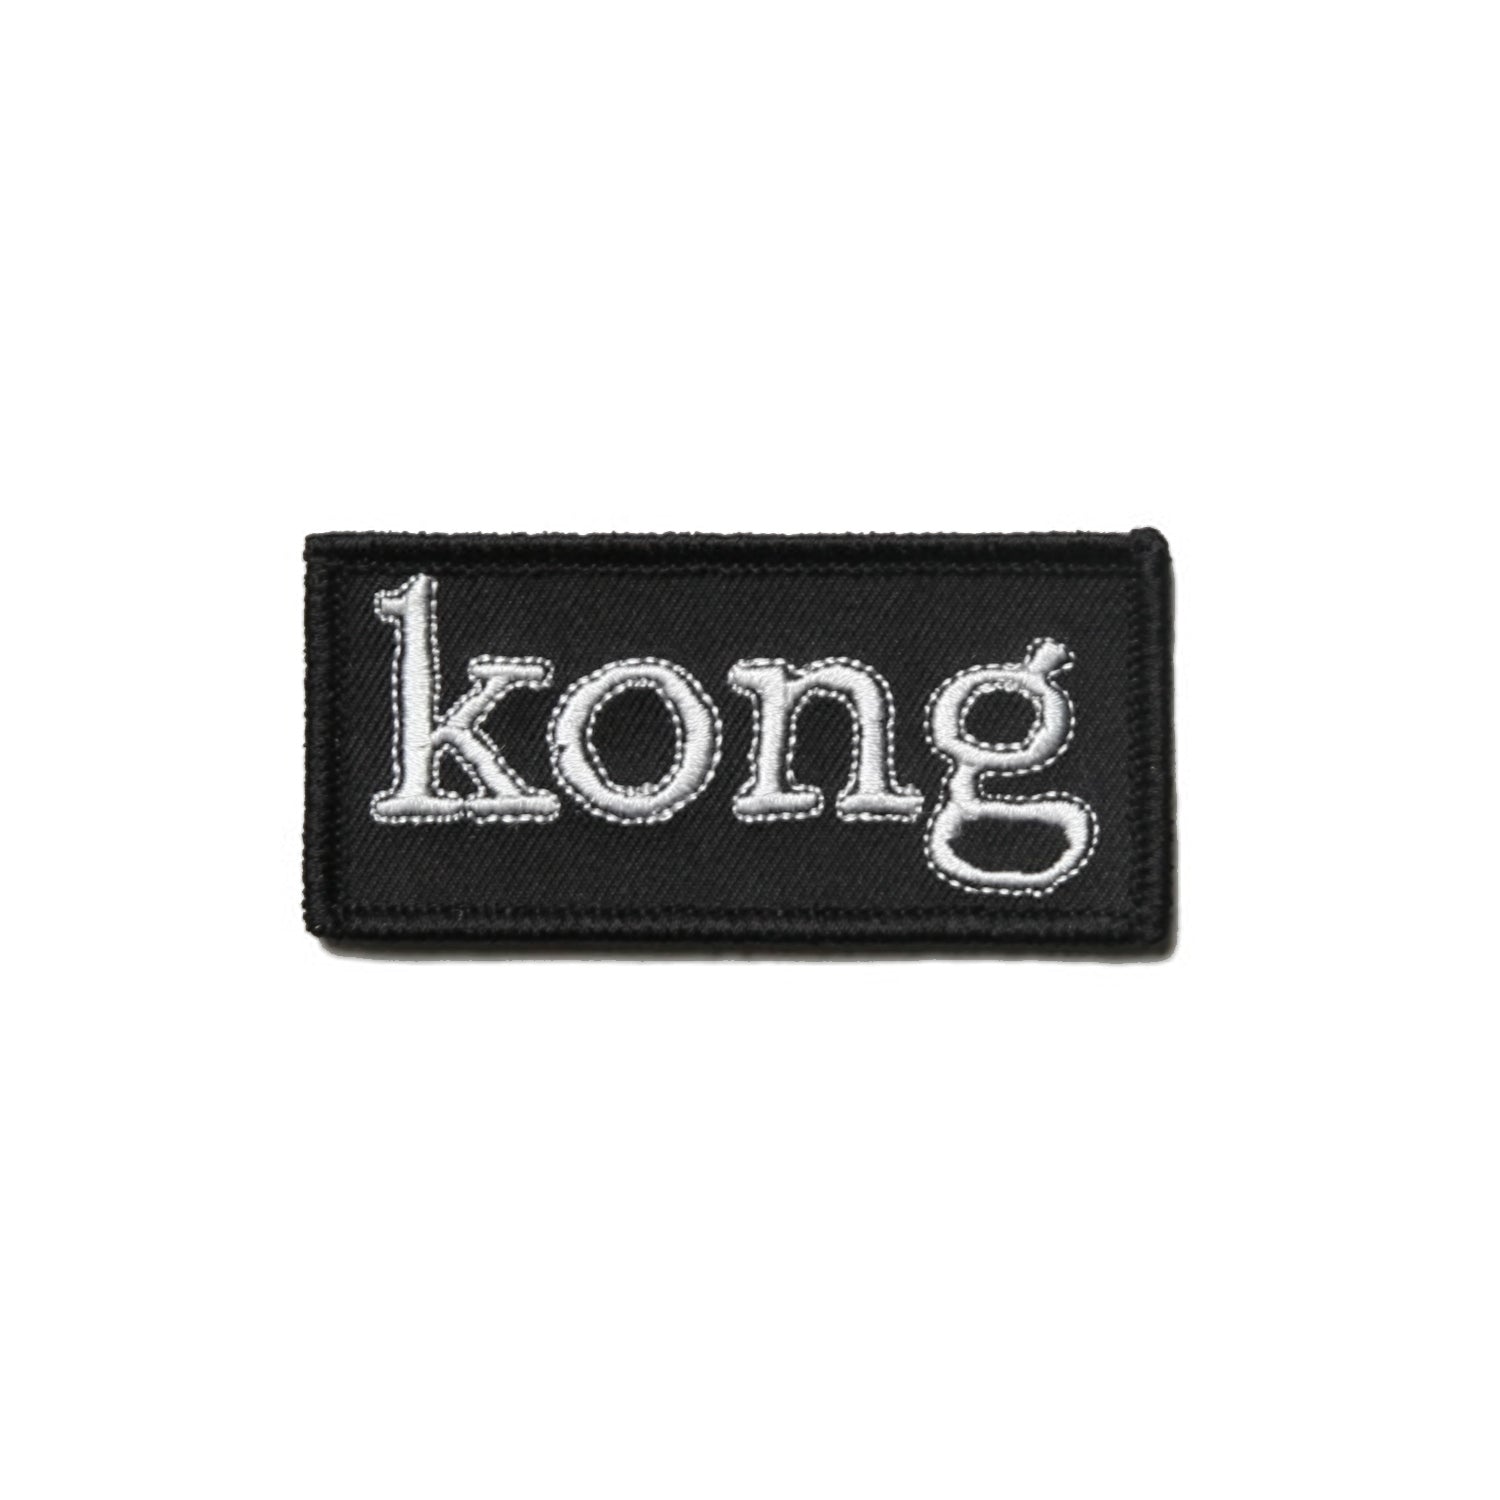 Kong Box Logo Patch Black